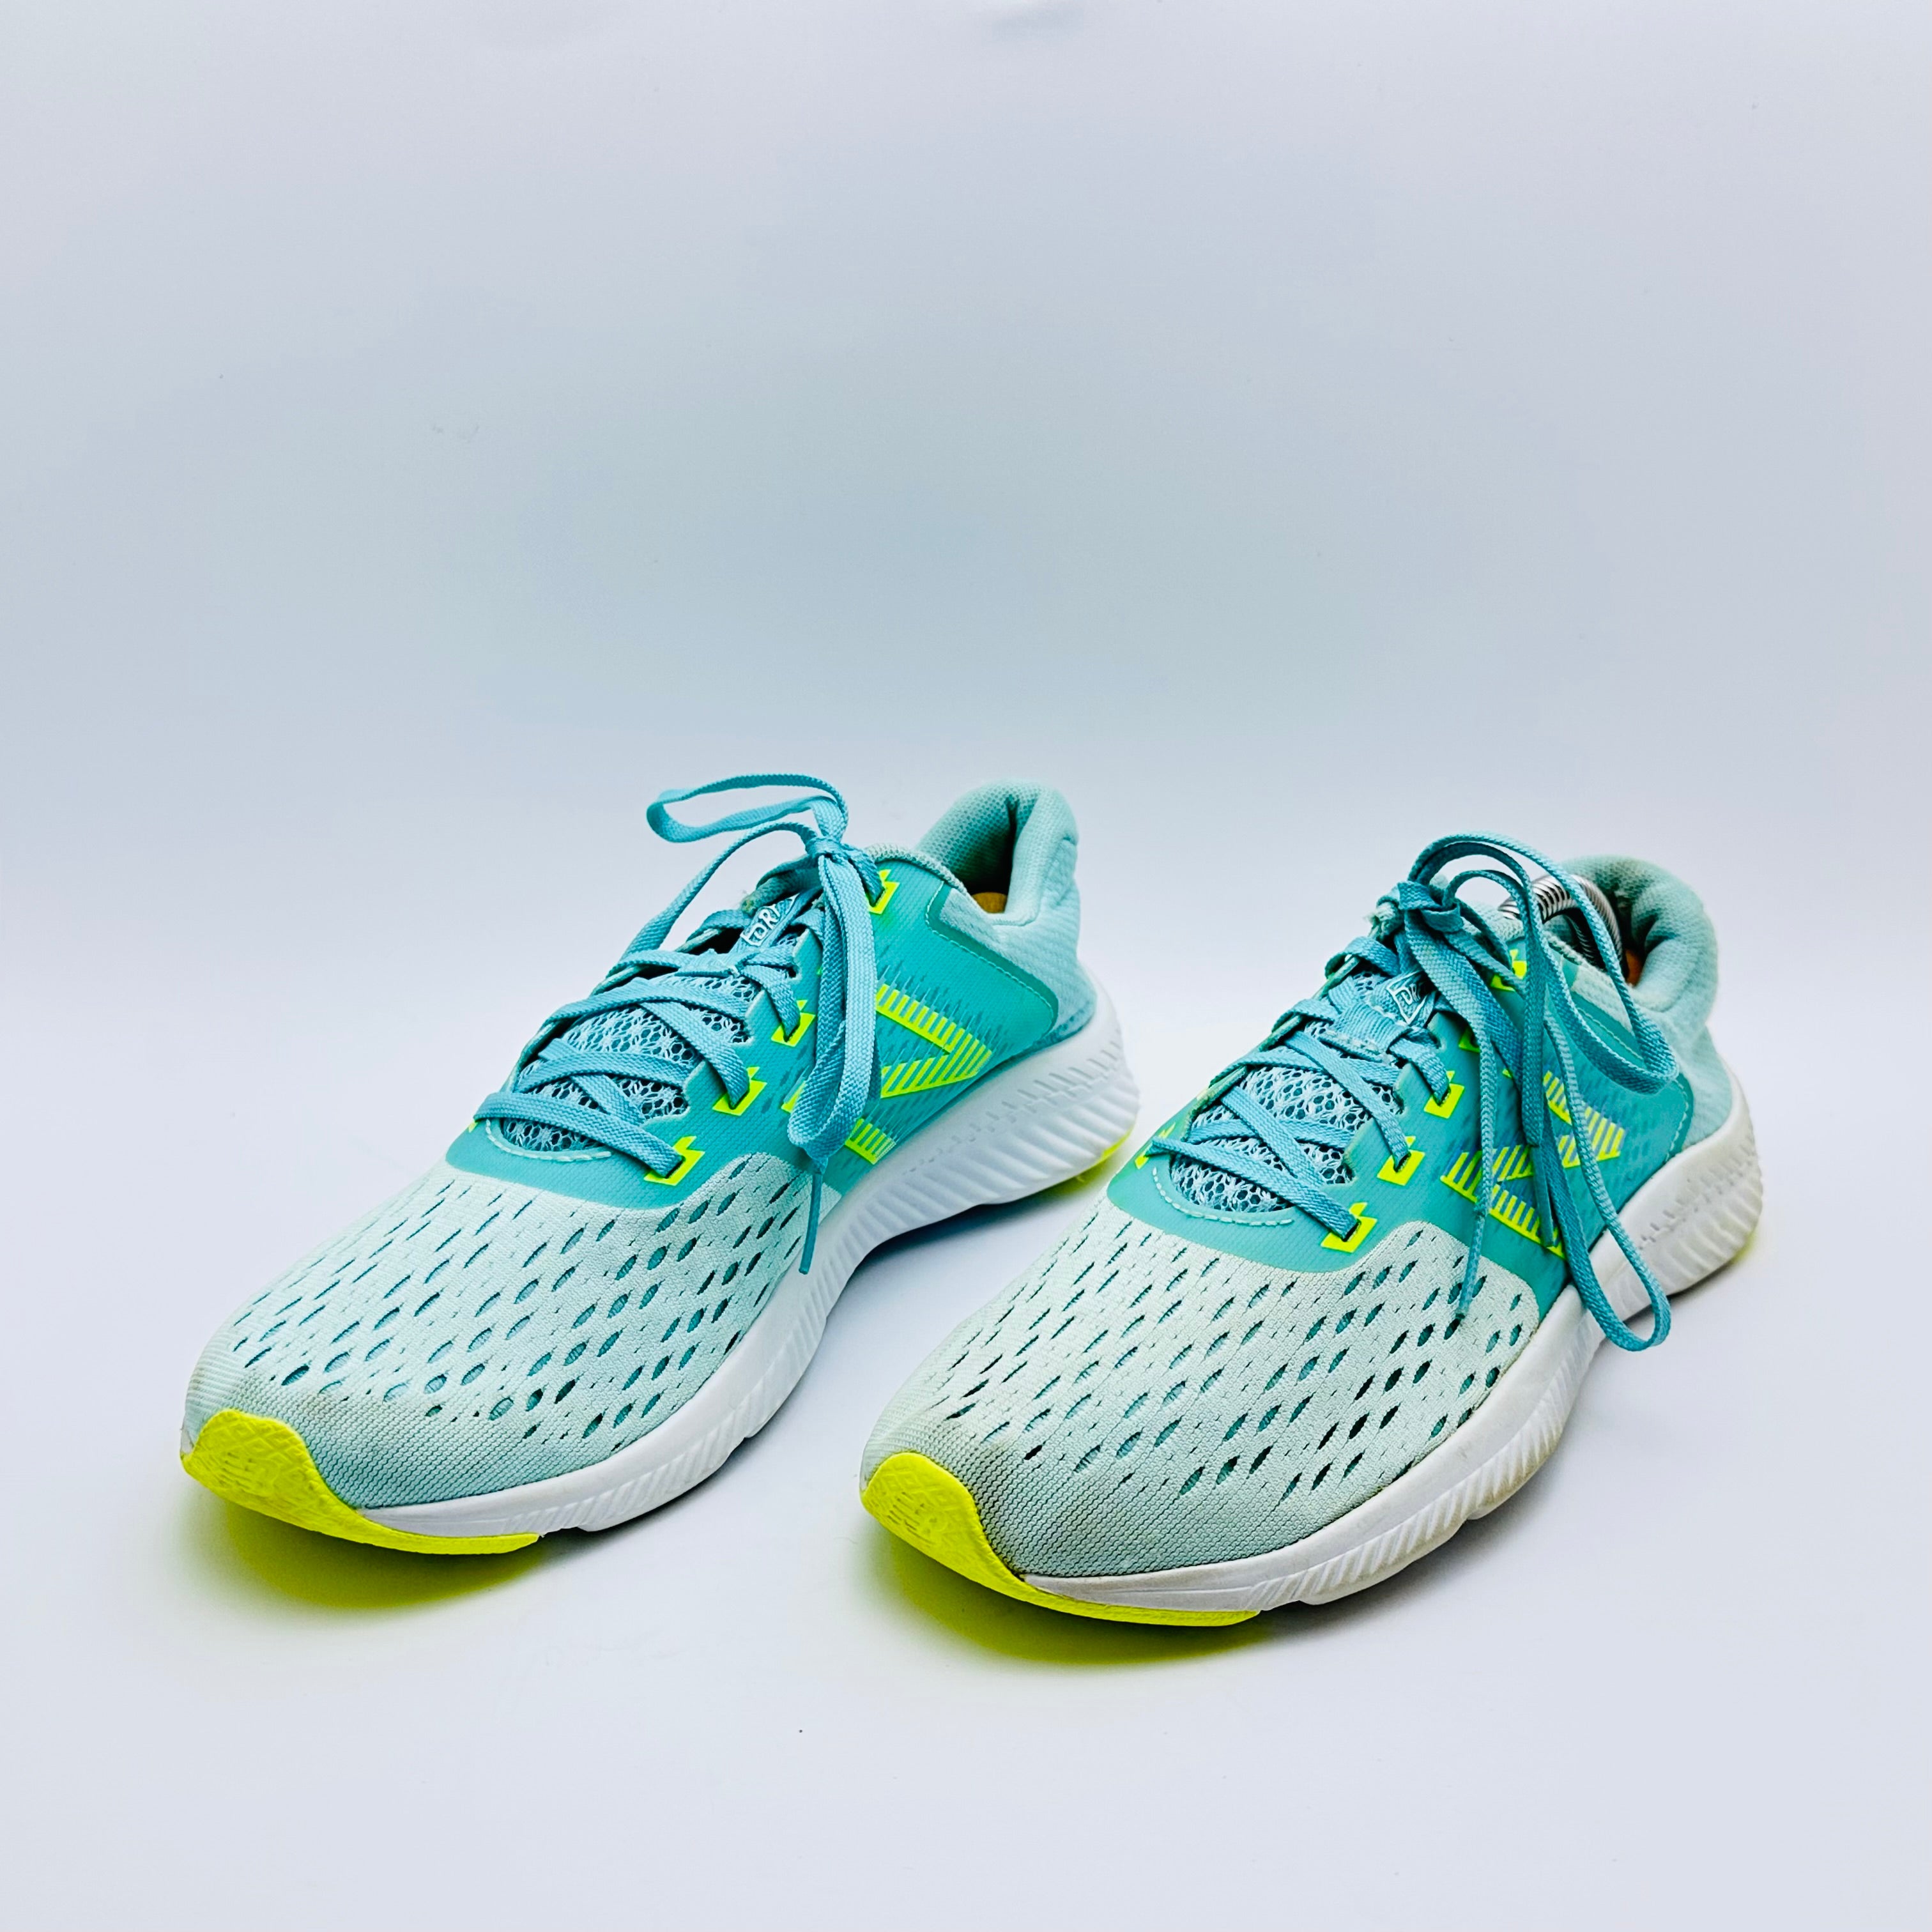 New Balance Women's DRFT V1 Running Shoe, Blue/Green